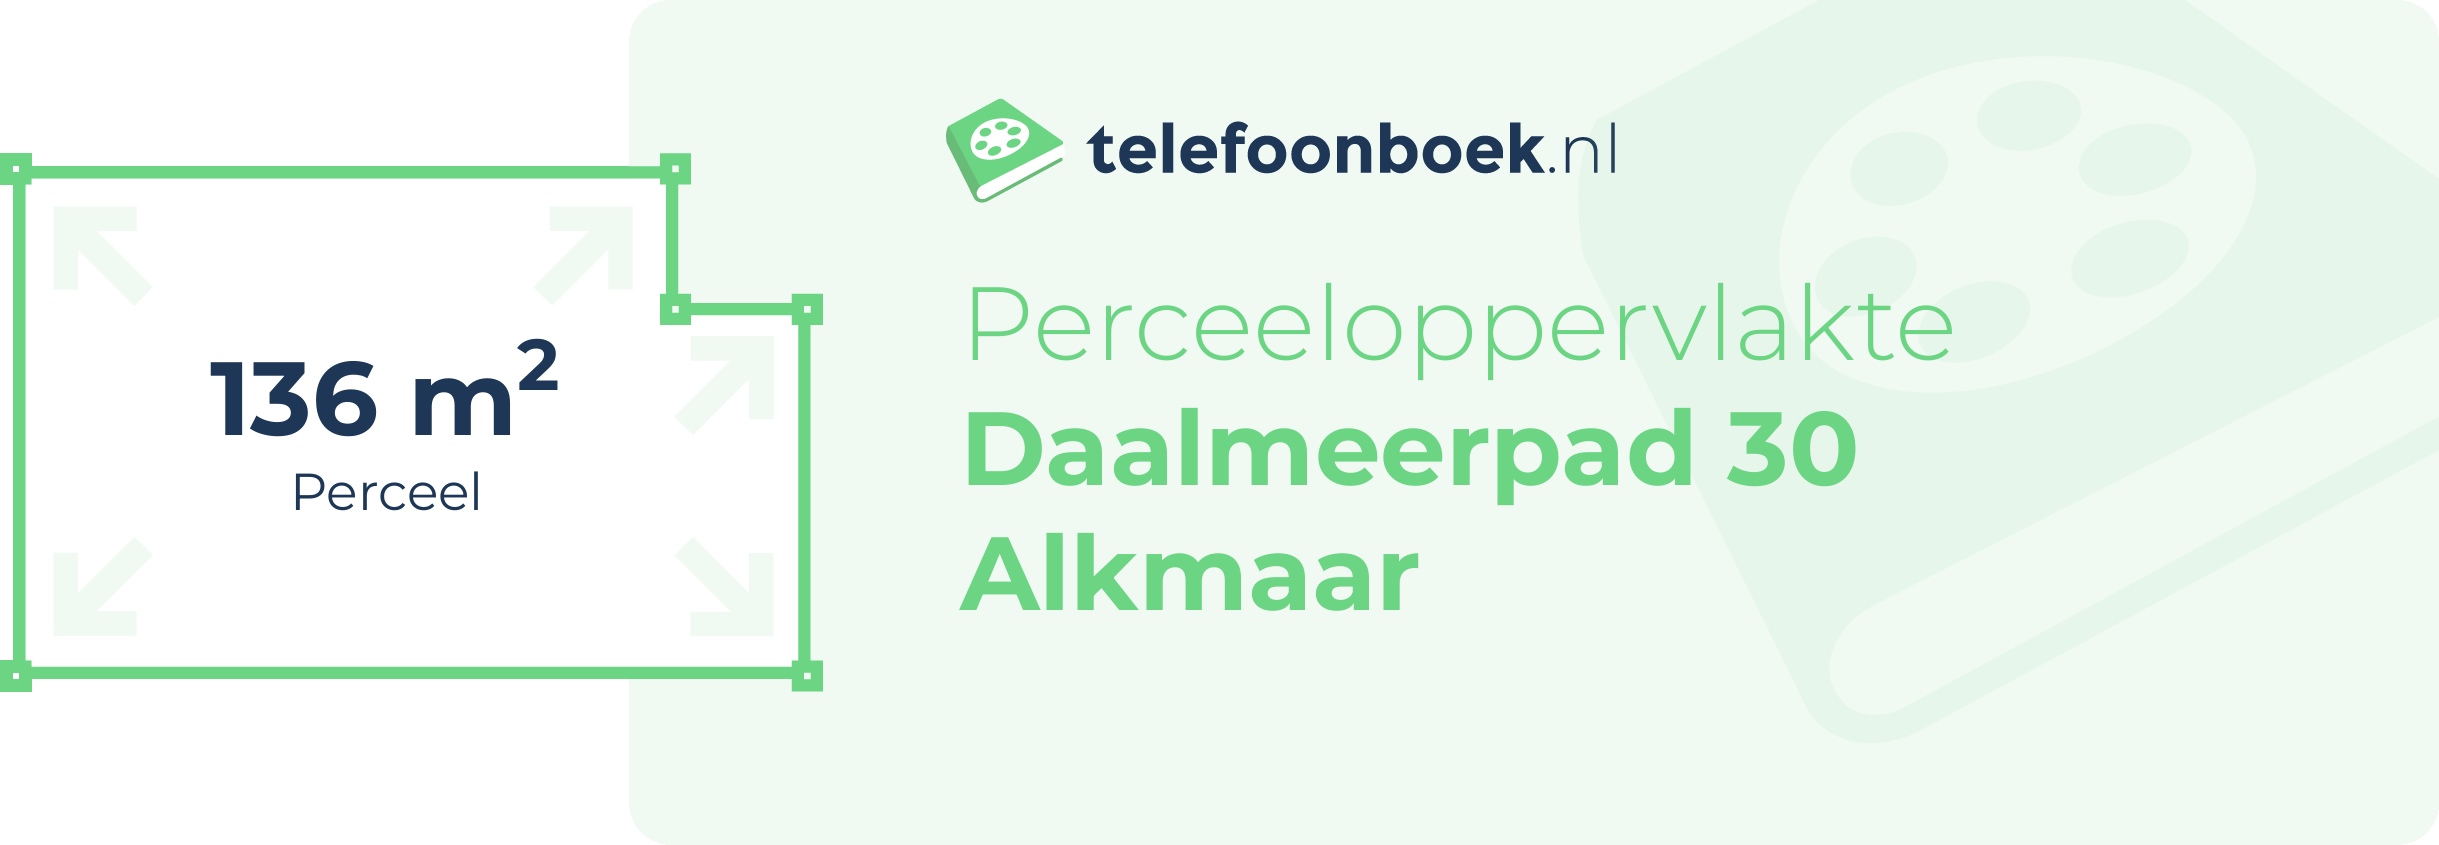 Perceeloppervlakte Daalmeerpad 30 Alkmaar